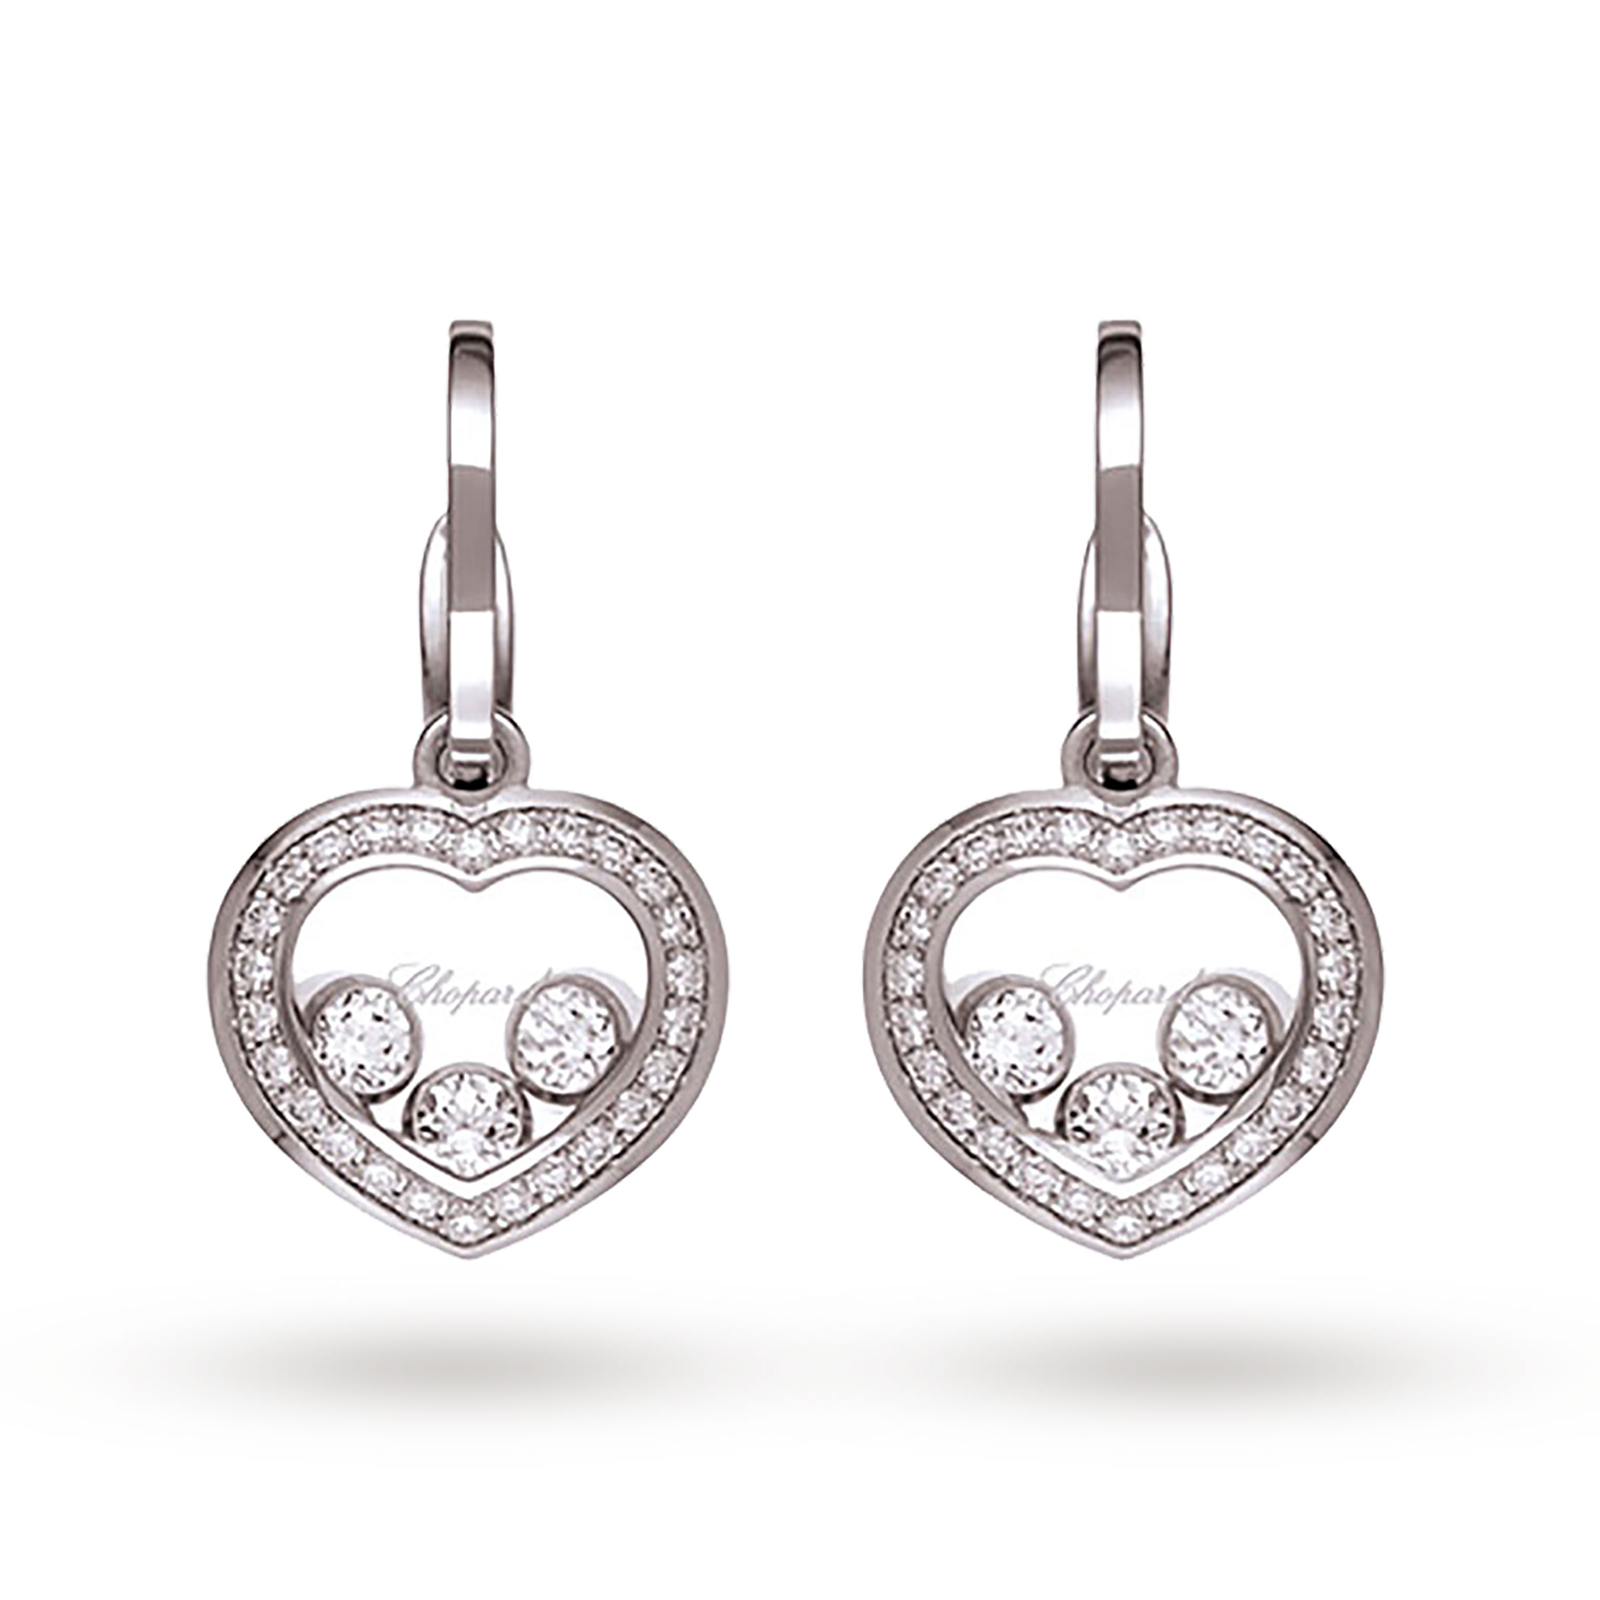 Chopard Happy Diamonds 18ct White Gold Earrings | Earrings | Jewellery ...